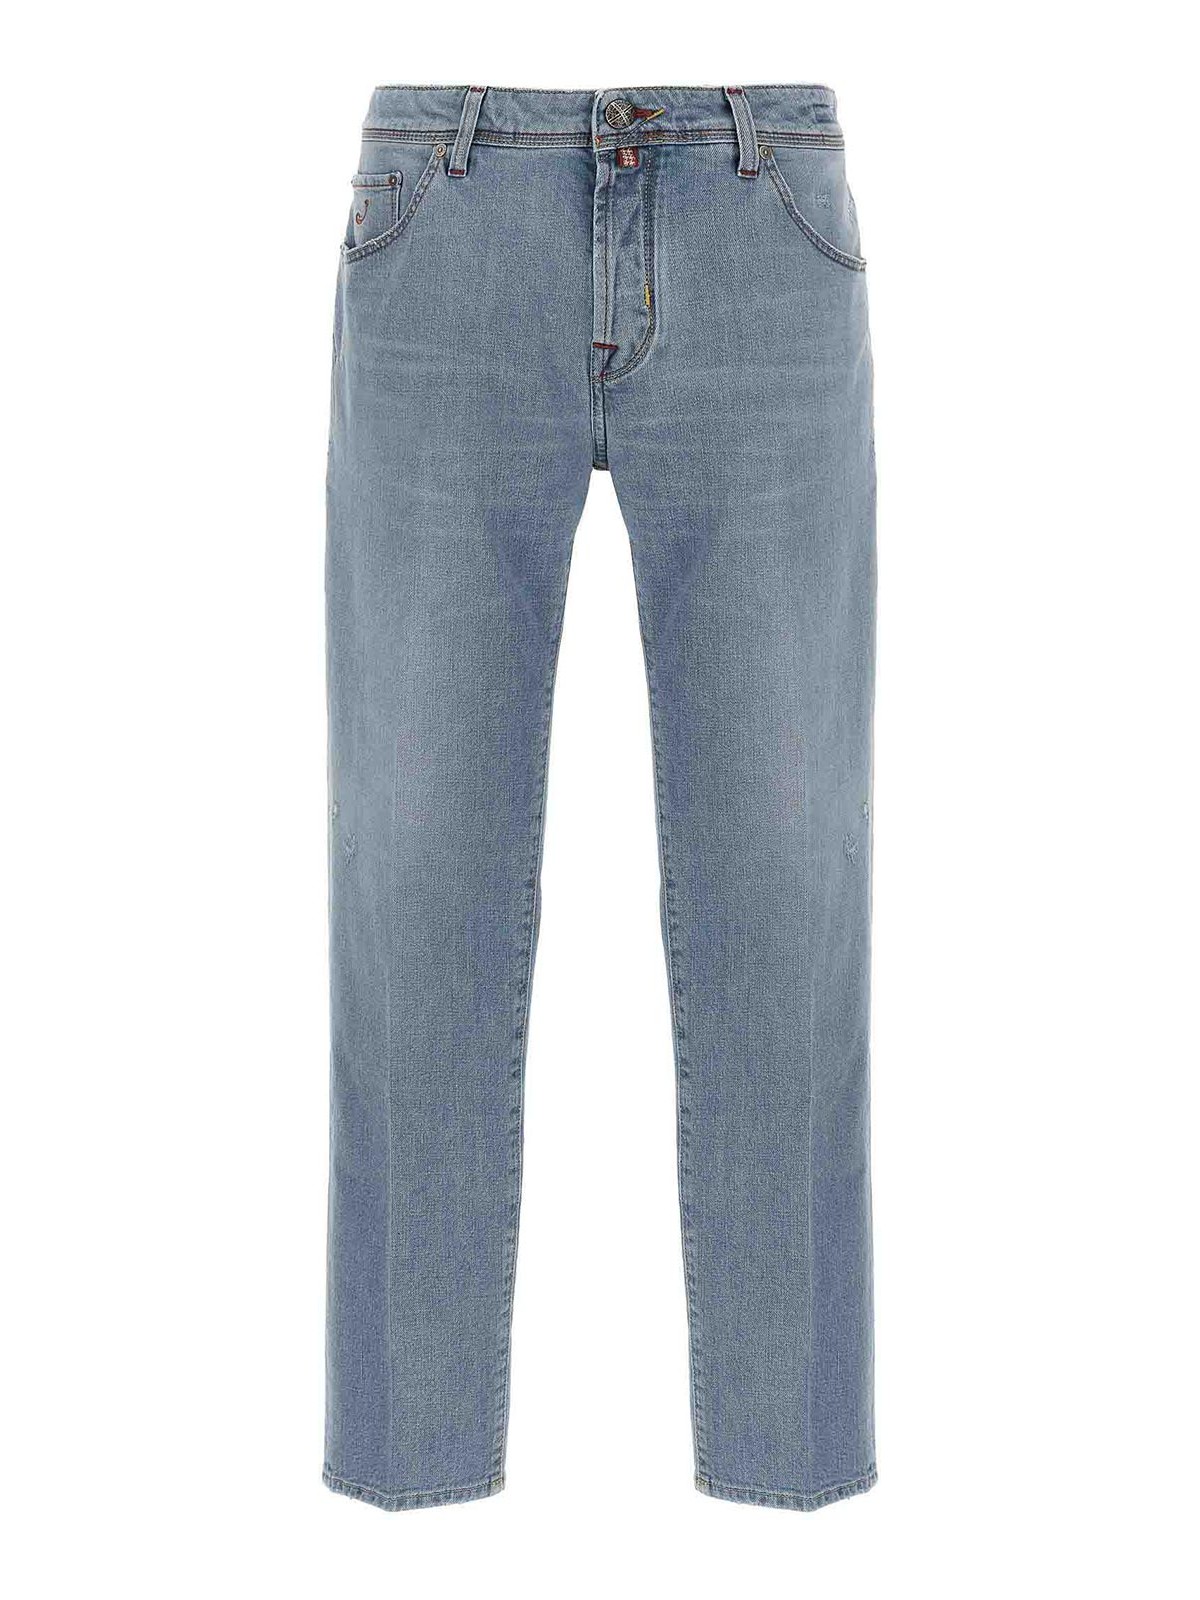 Jacob Cohen Scott Denim Jeans Rips In Light Blue